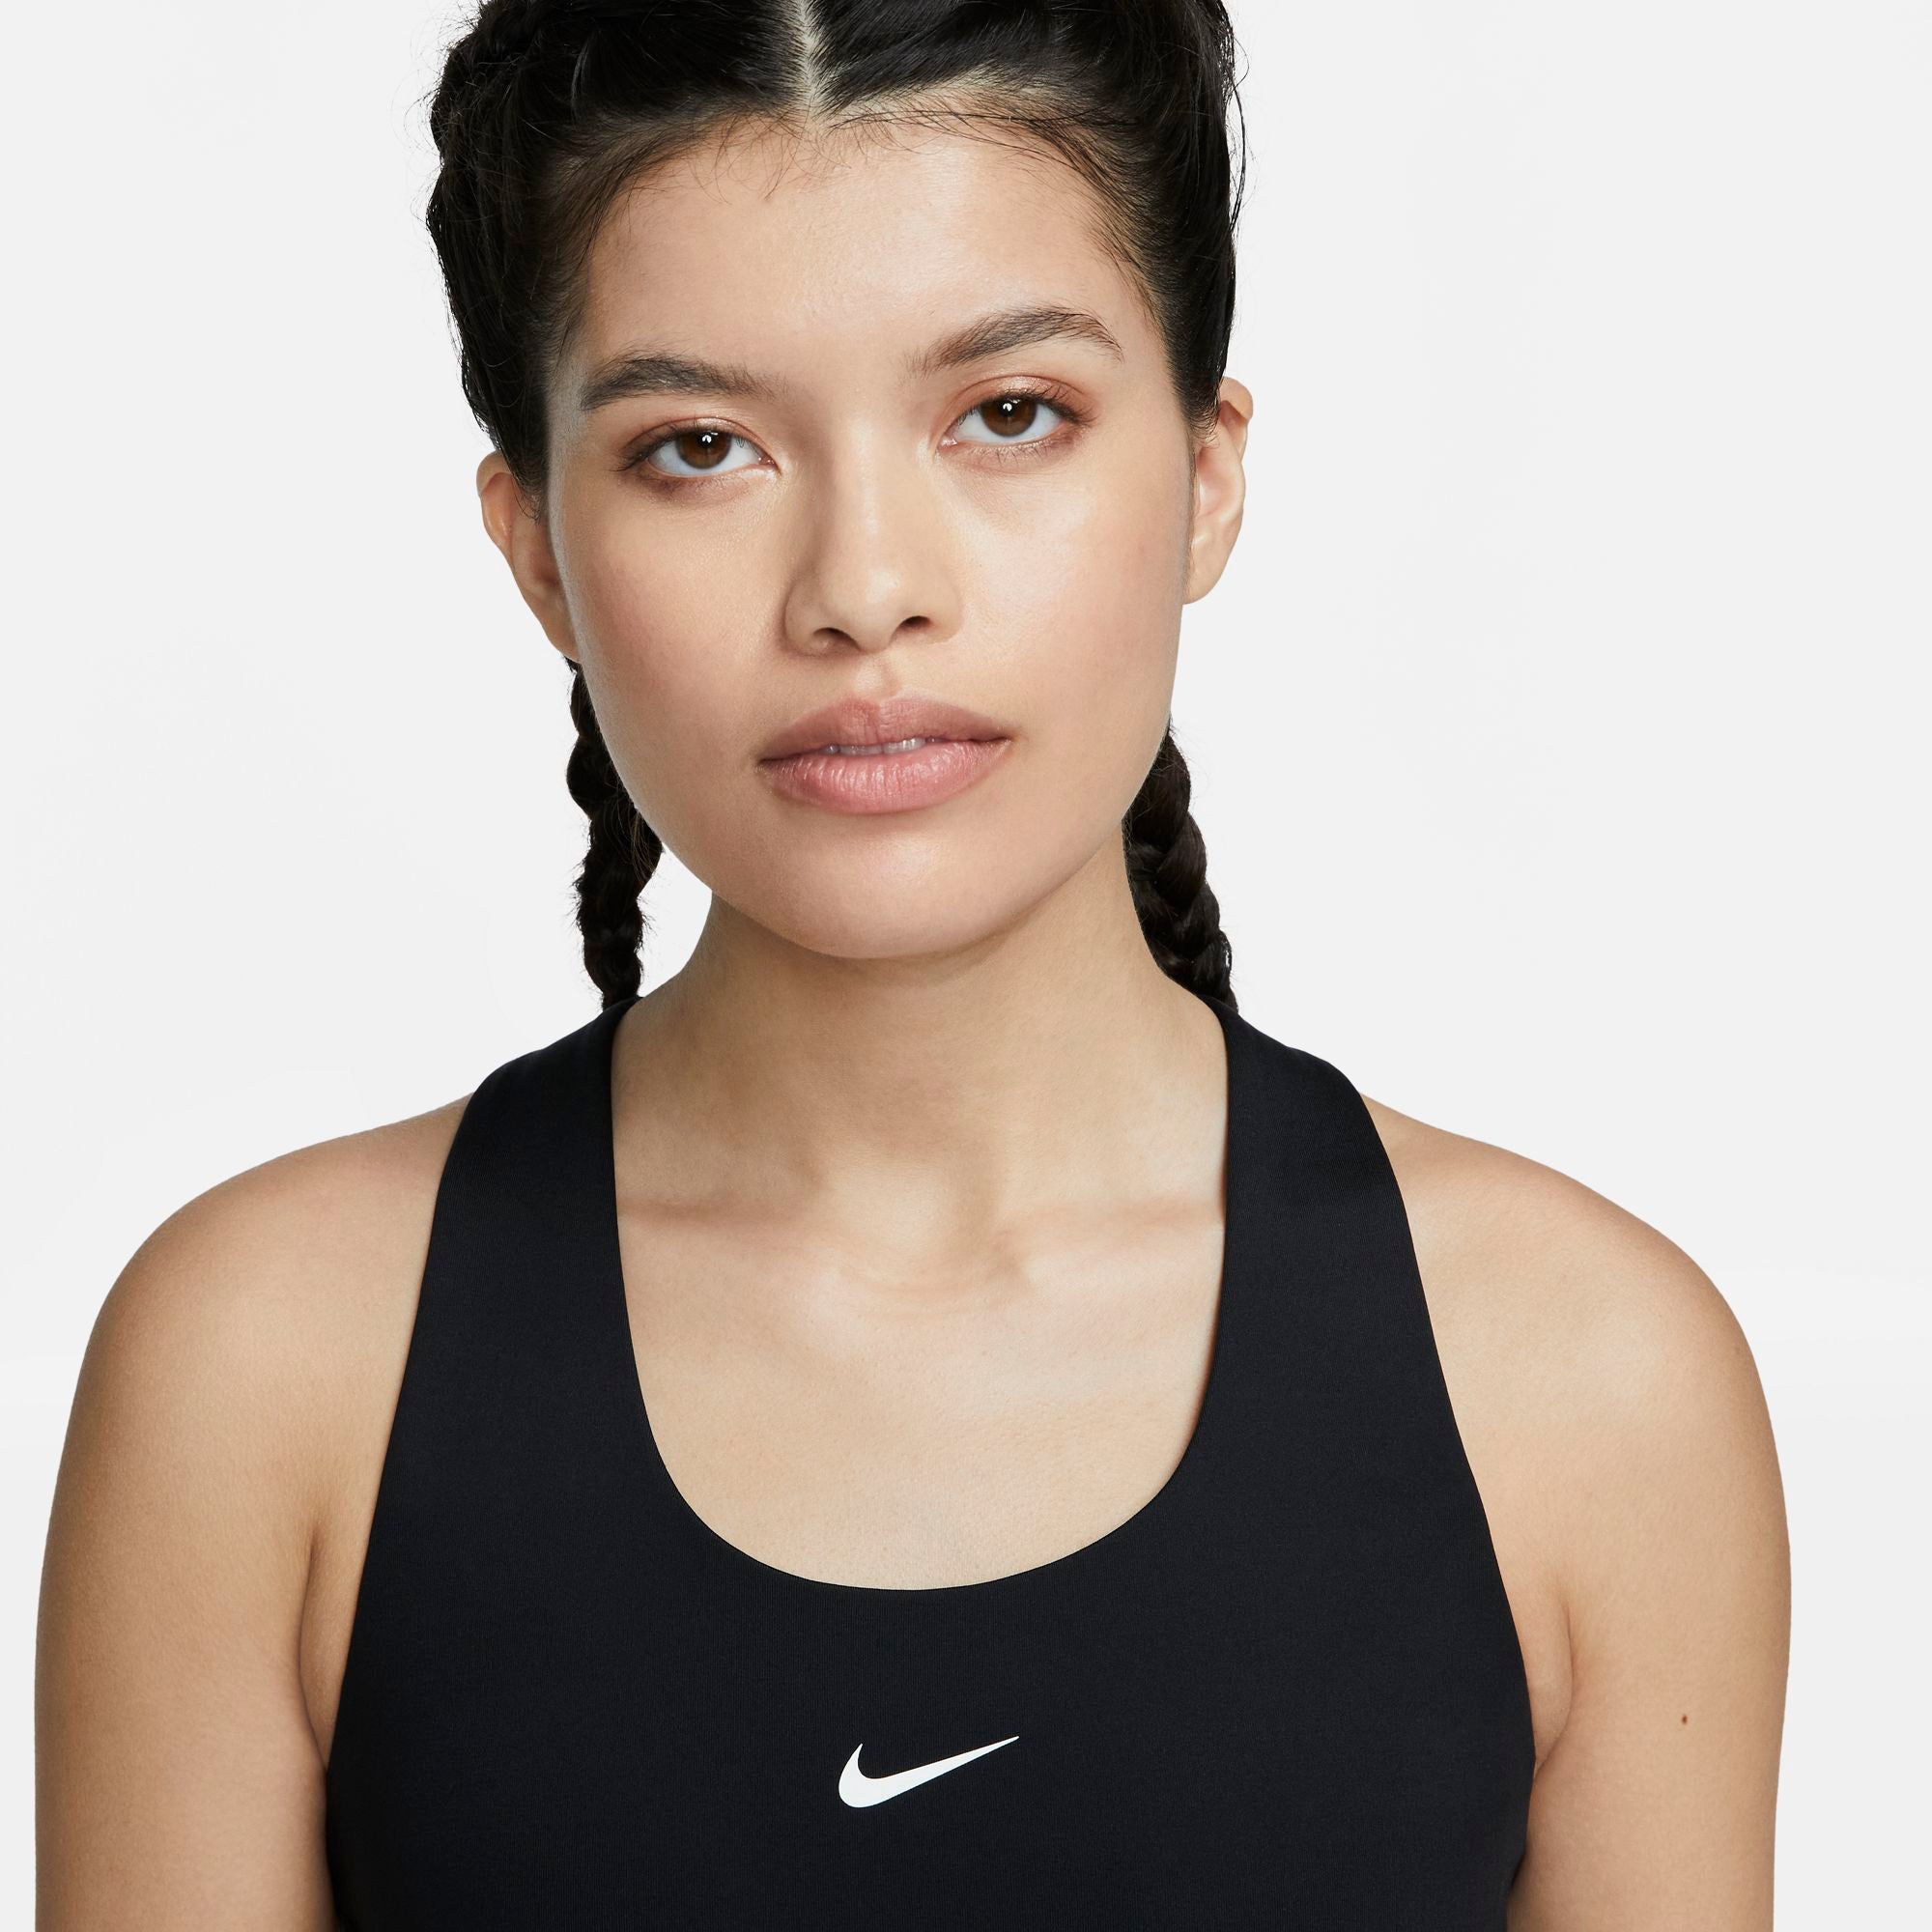 Nike Women's Dri-FIT Swoosh Bra Tank